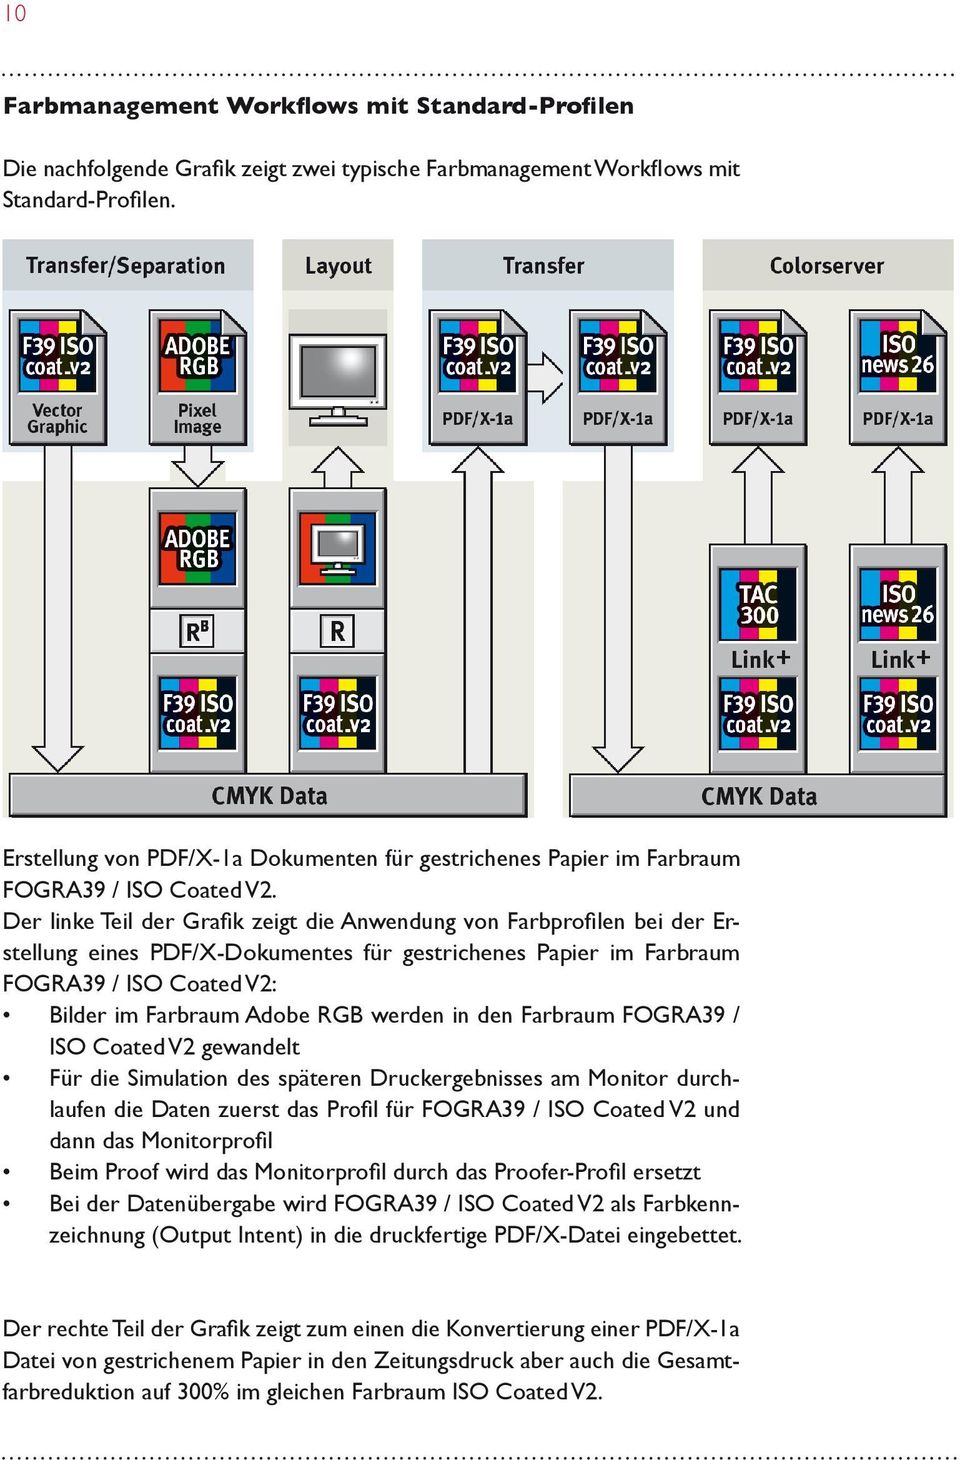 Der linke Teil der Grafik zeigt die Anwendung von Farbprofilen bei der Erstellung eines PDF/X-Dokumentes für gestrichenes Papier im Farbraum FOGRA39 / ISO Coated V2: Bilder im Farbraum Adobe RGB